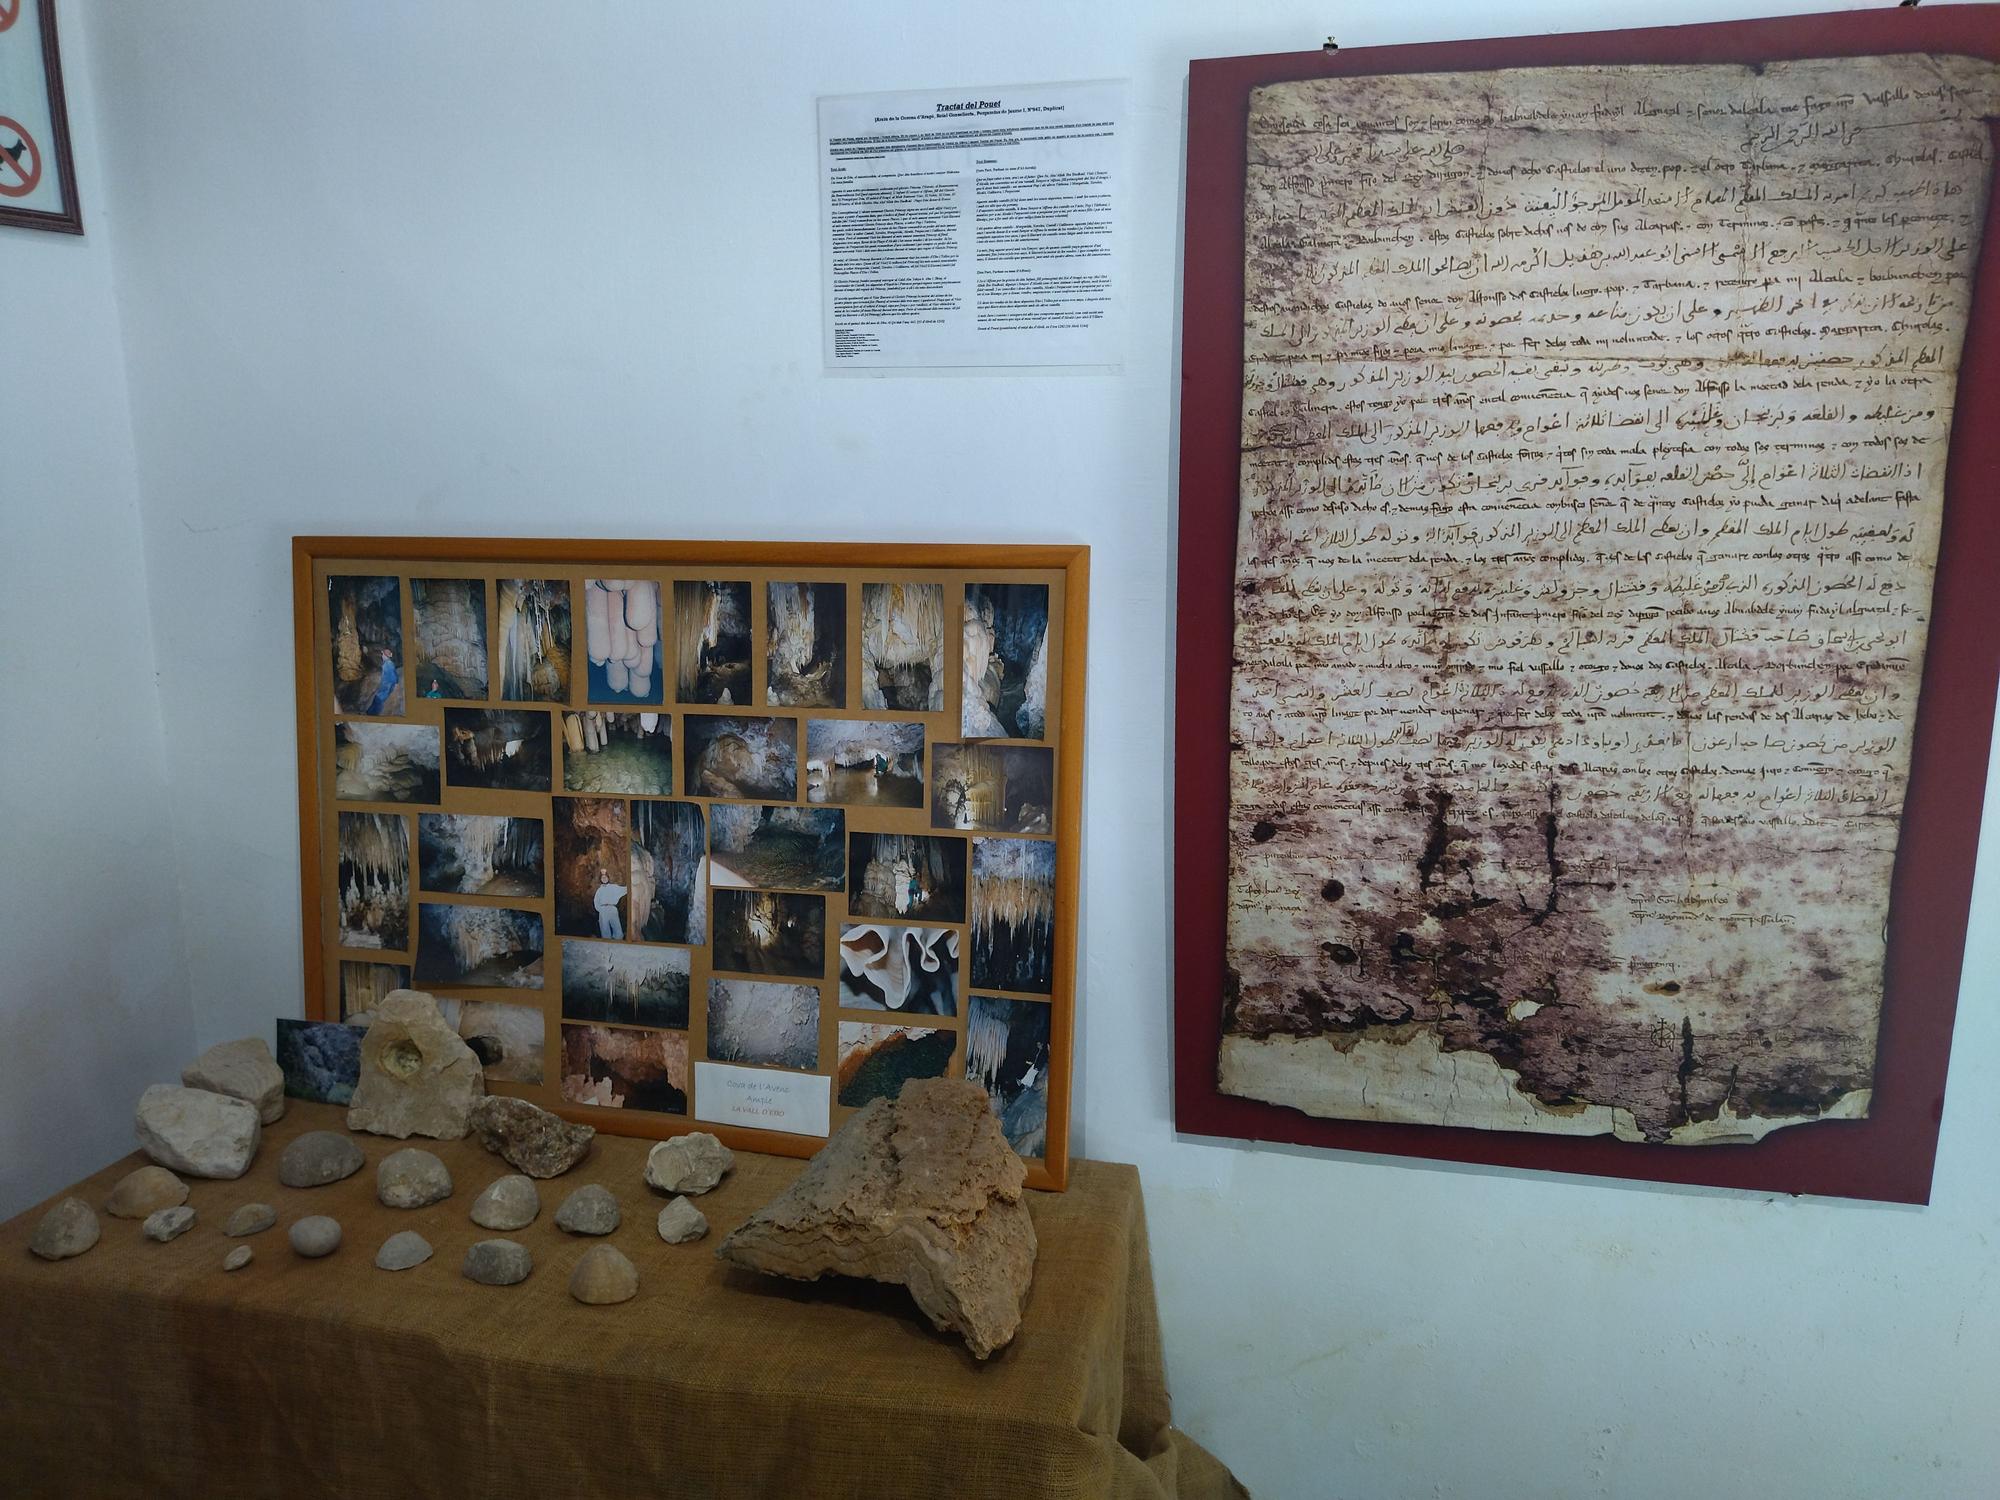 El museo es la vida: resurge la historia de la Vall d'Ebo